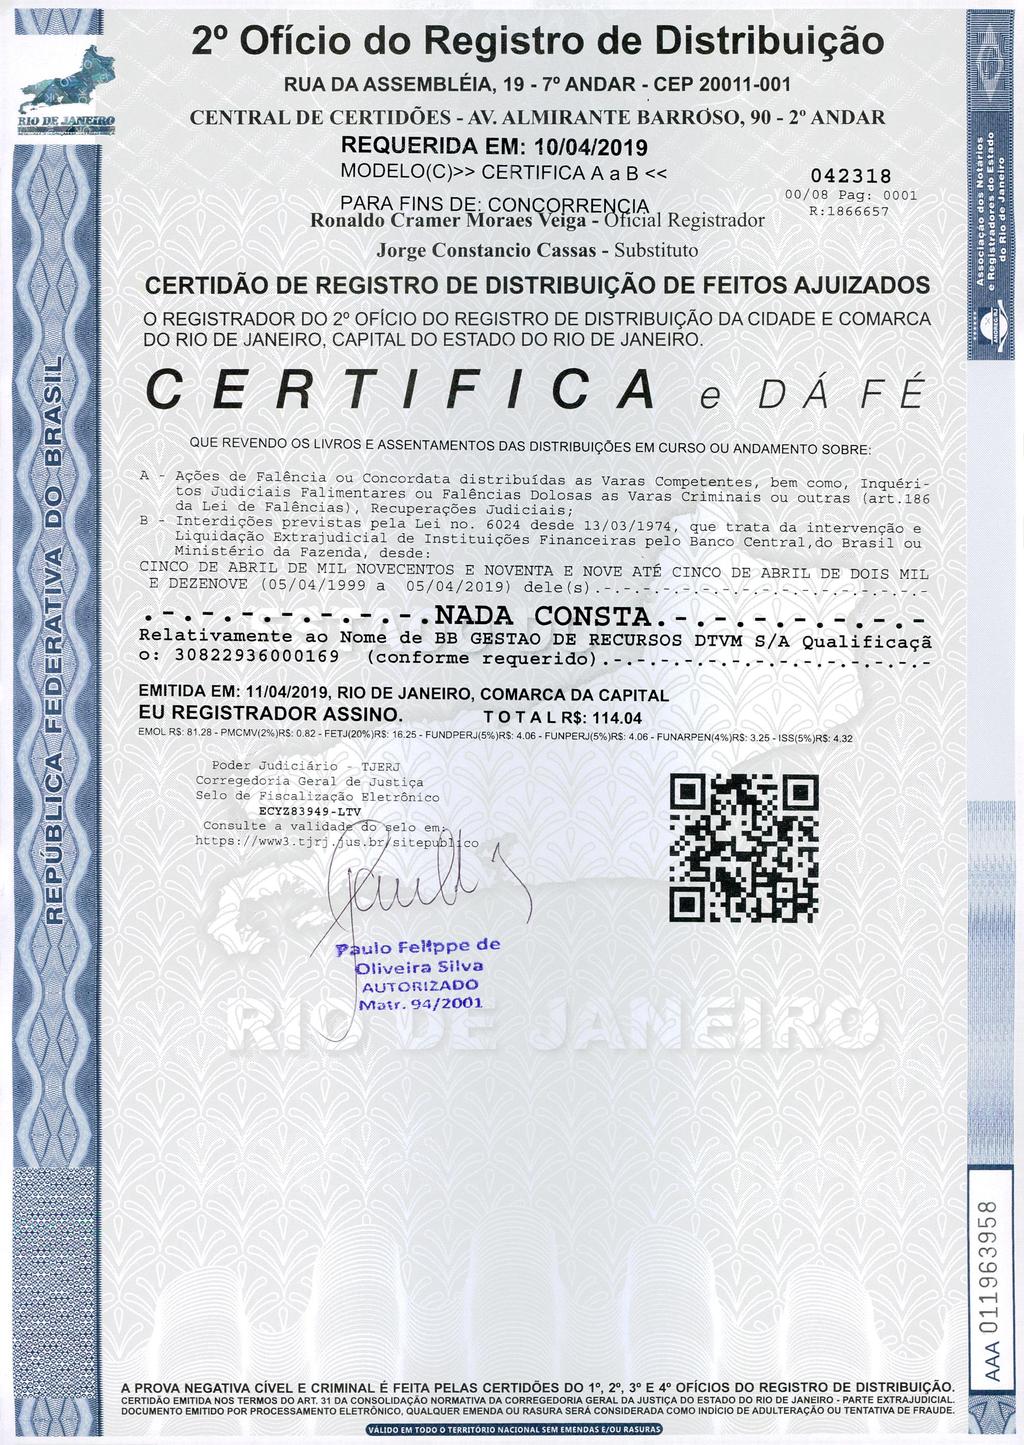 eulaonow 2 Ofício do Registro de Distribuição RUA DA ASSEMBLÉIA, 19-7 ANDAR - CEP 20011-001 of,..l"no Lep~r/exe CENTRAL DE CERTIDÕES - AV.